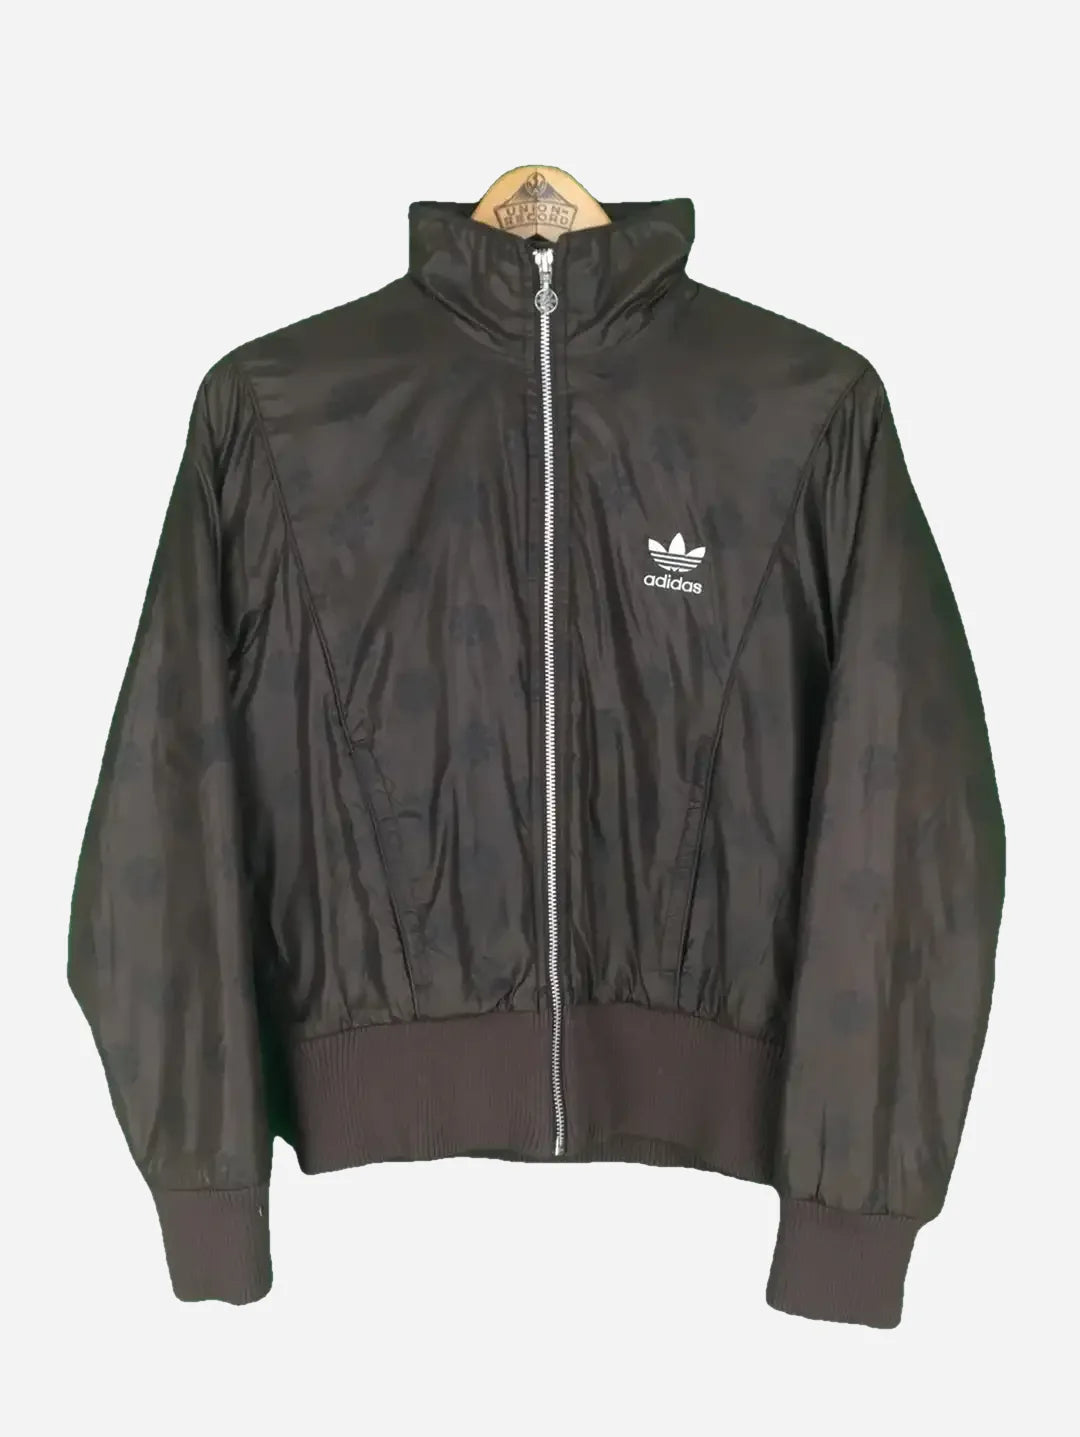 Adidas jacket (XS)